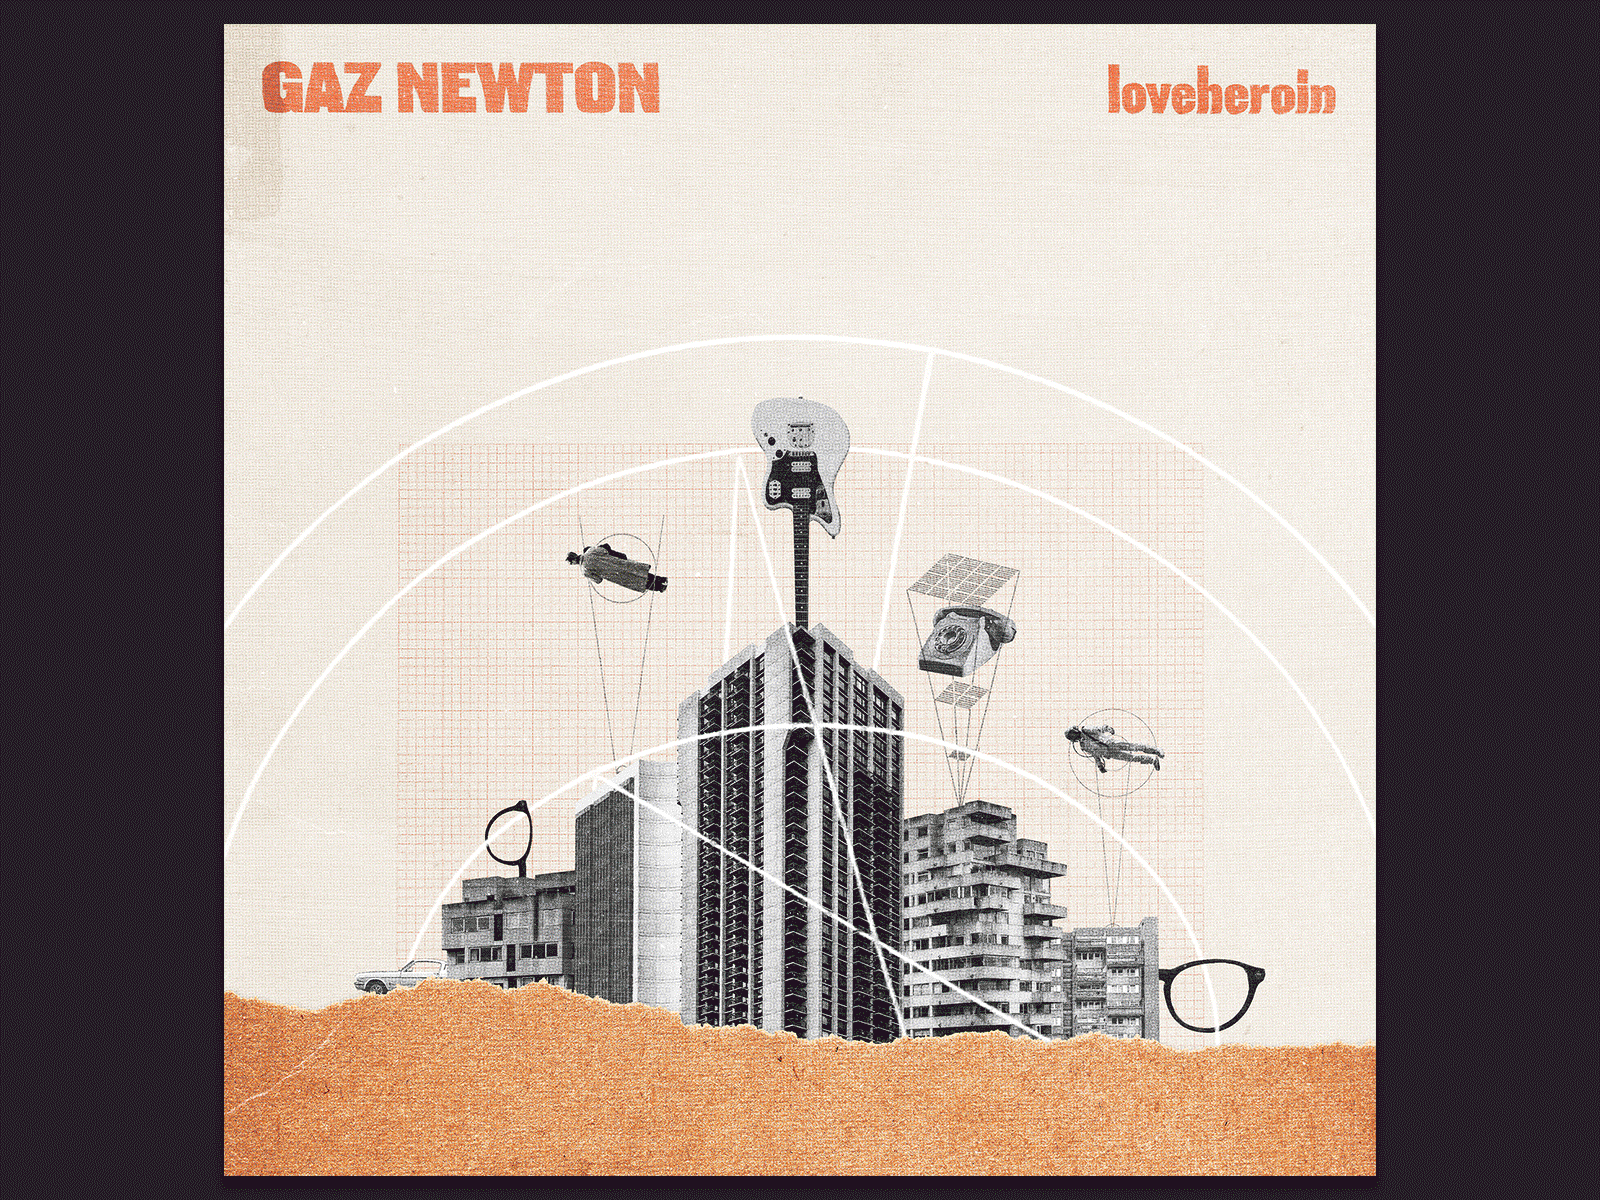 Gaz Newton - Loveheroin [LP] album art collage collage art digital collage surreal textured weird